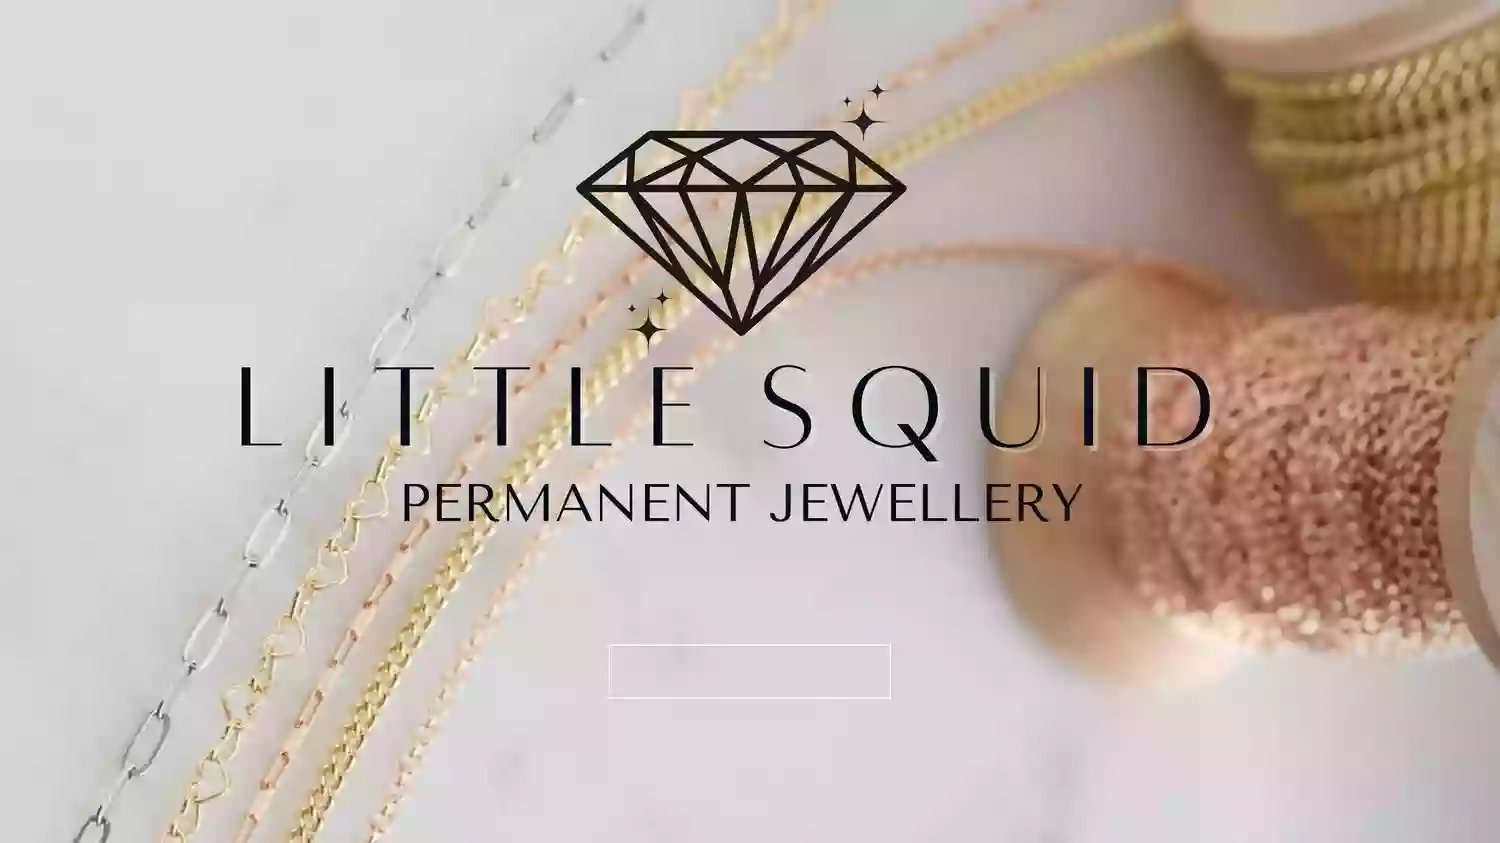 Permanent Jewellery - Little Squid